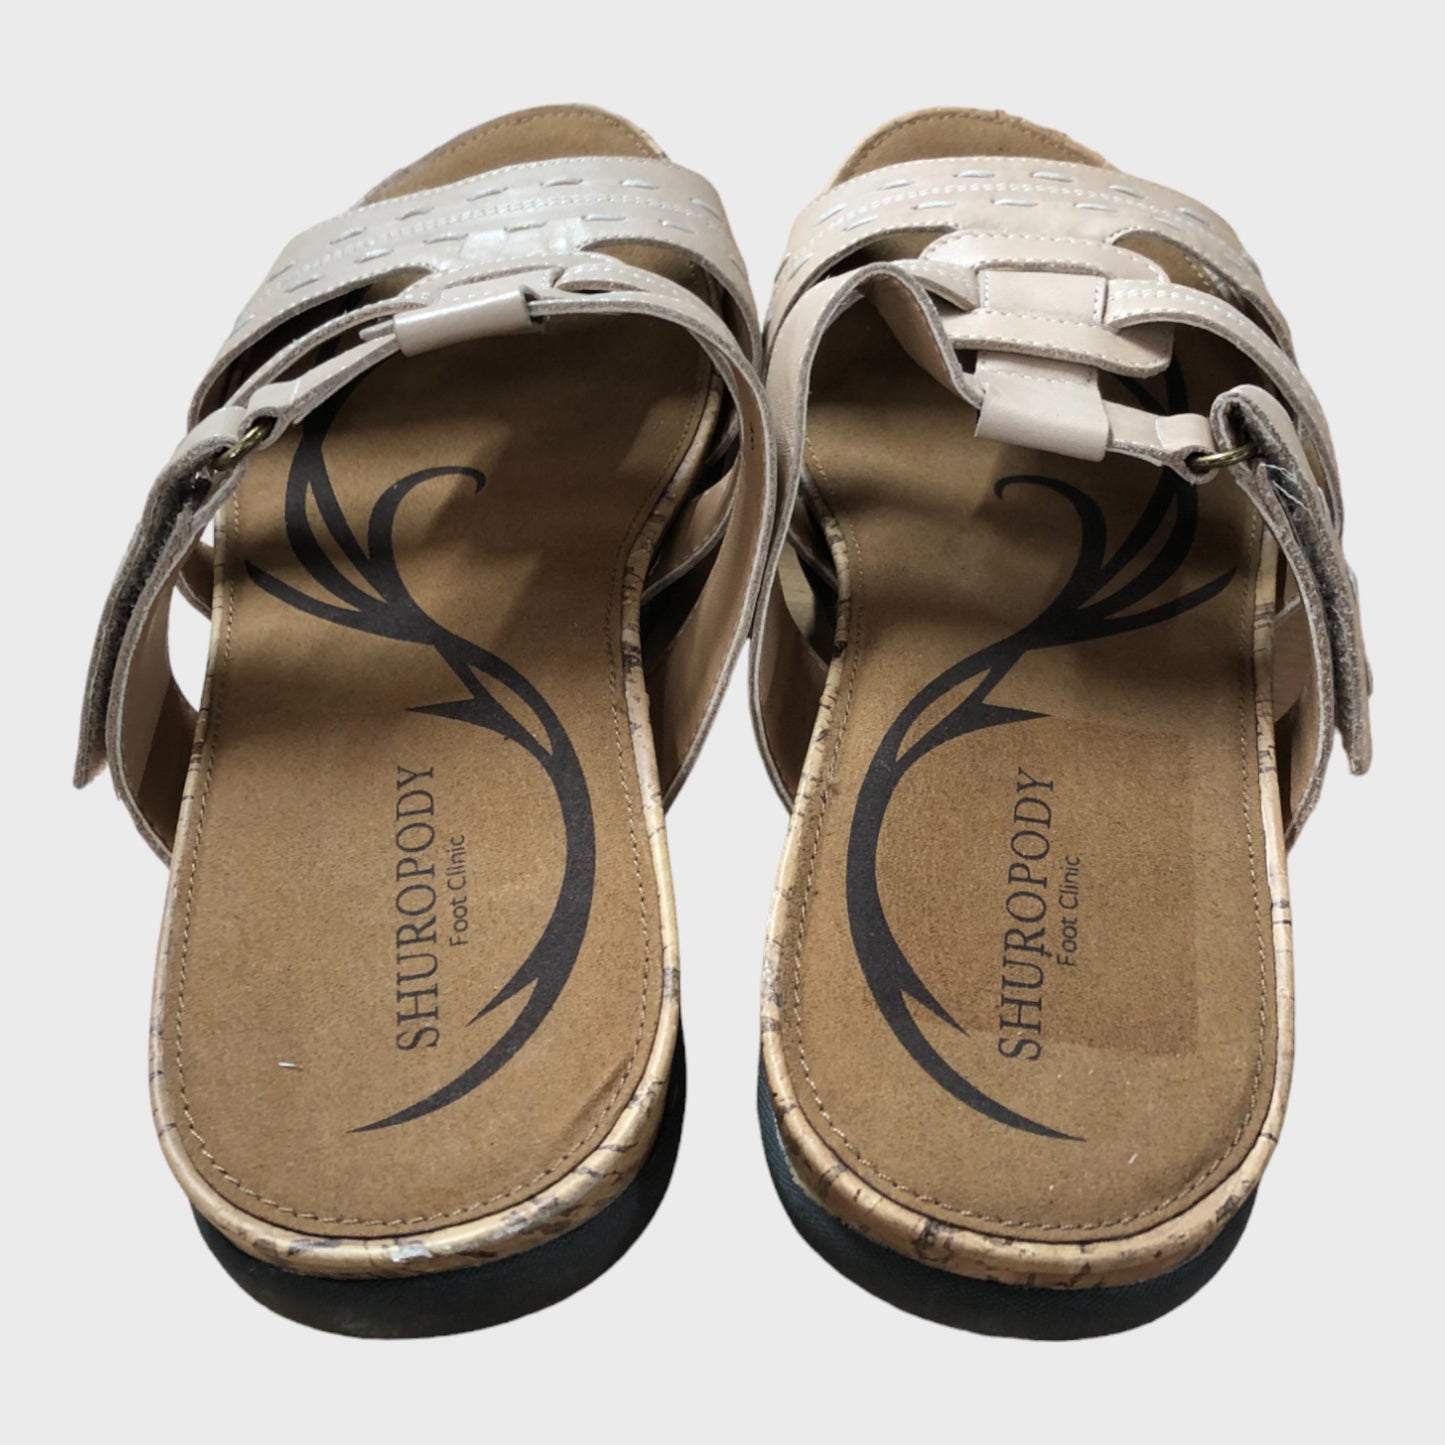 Shuropody Beige Sandals